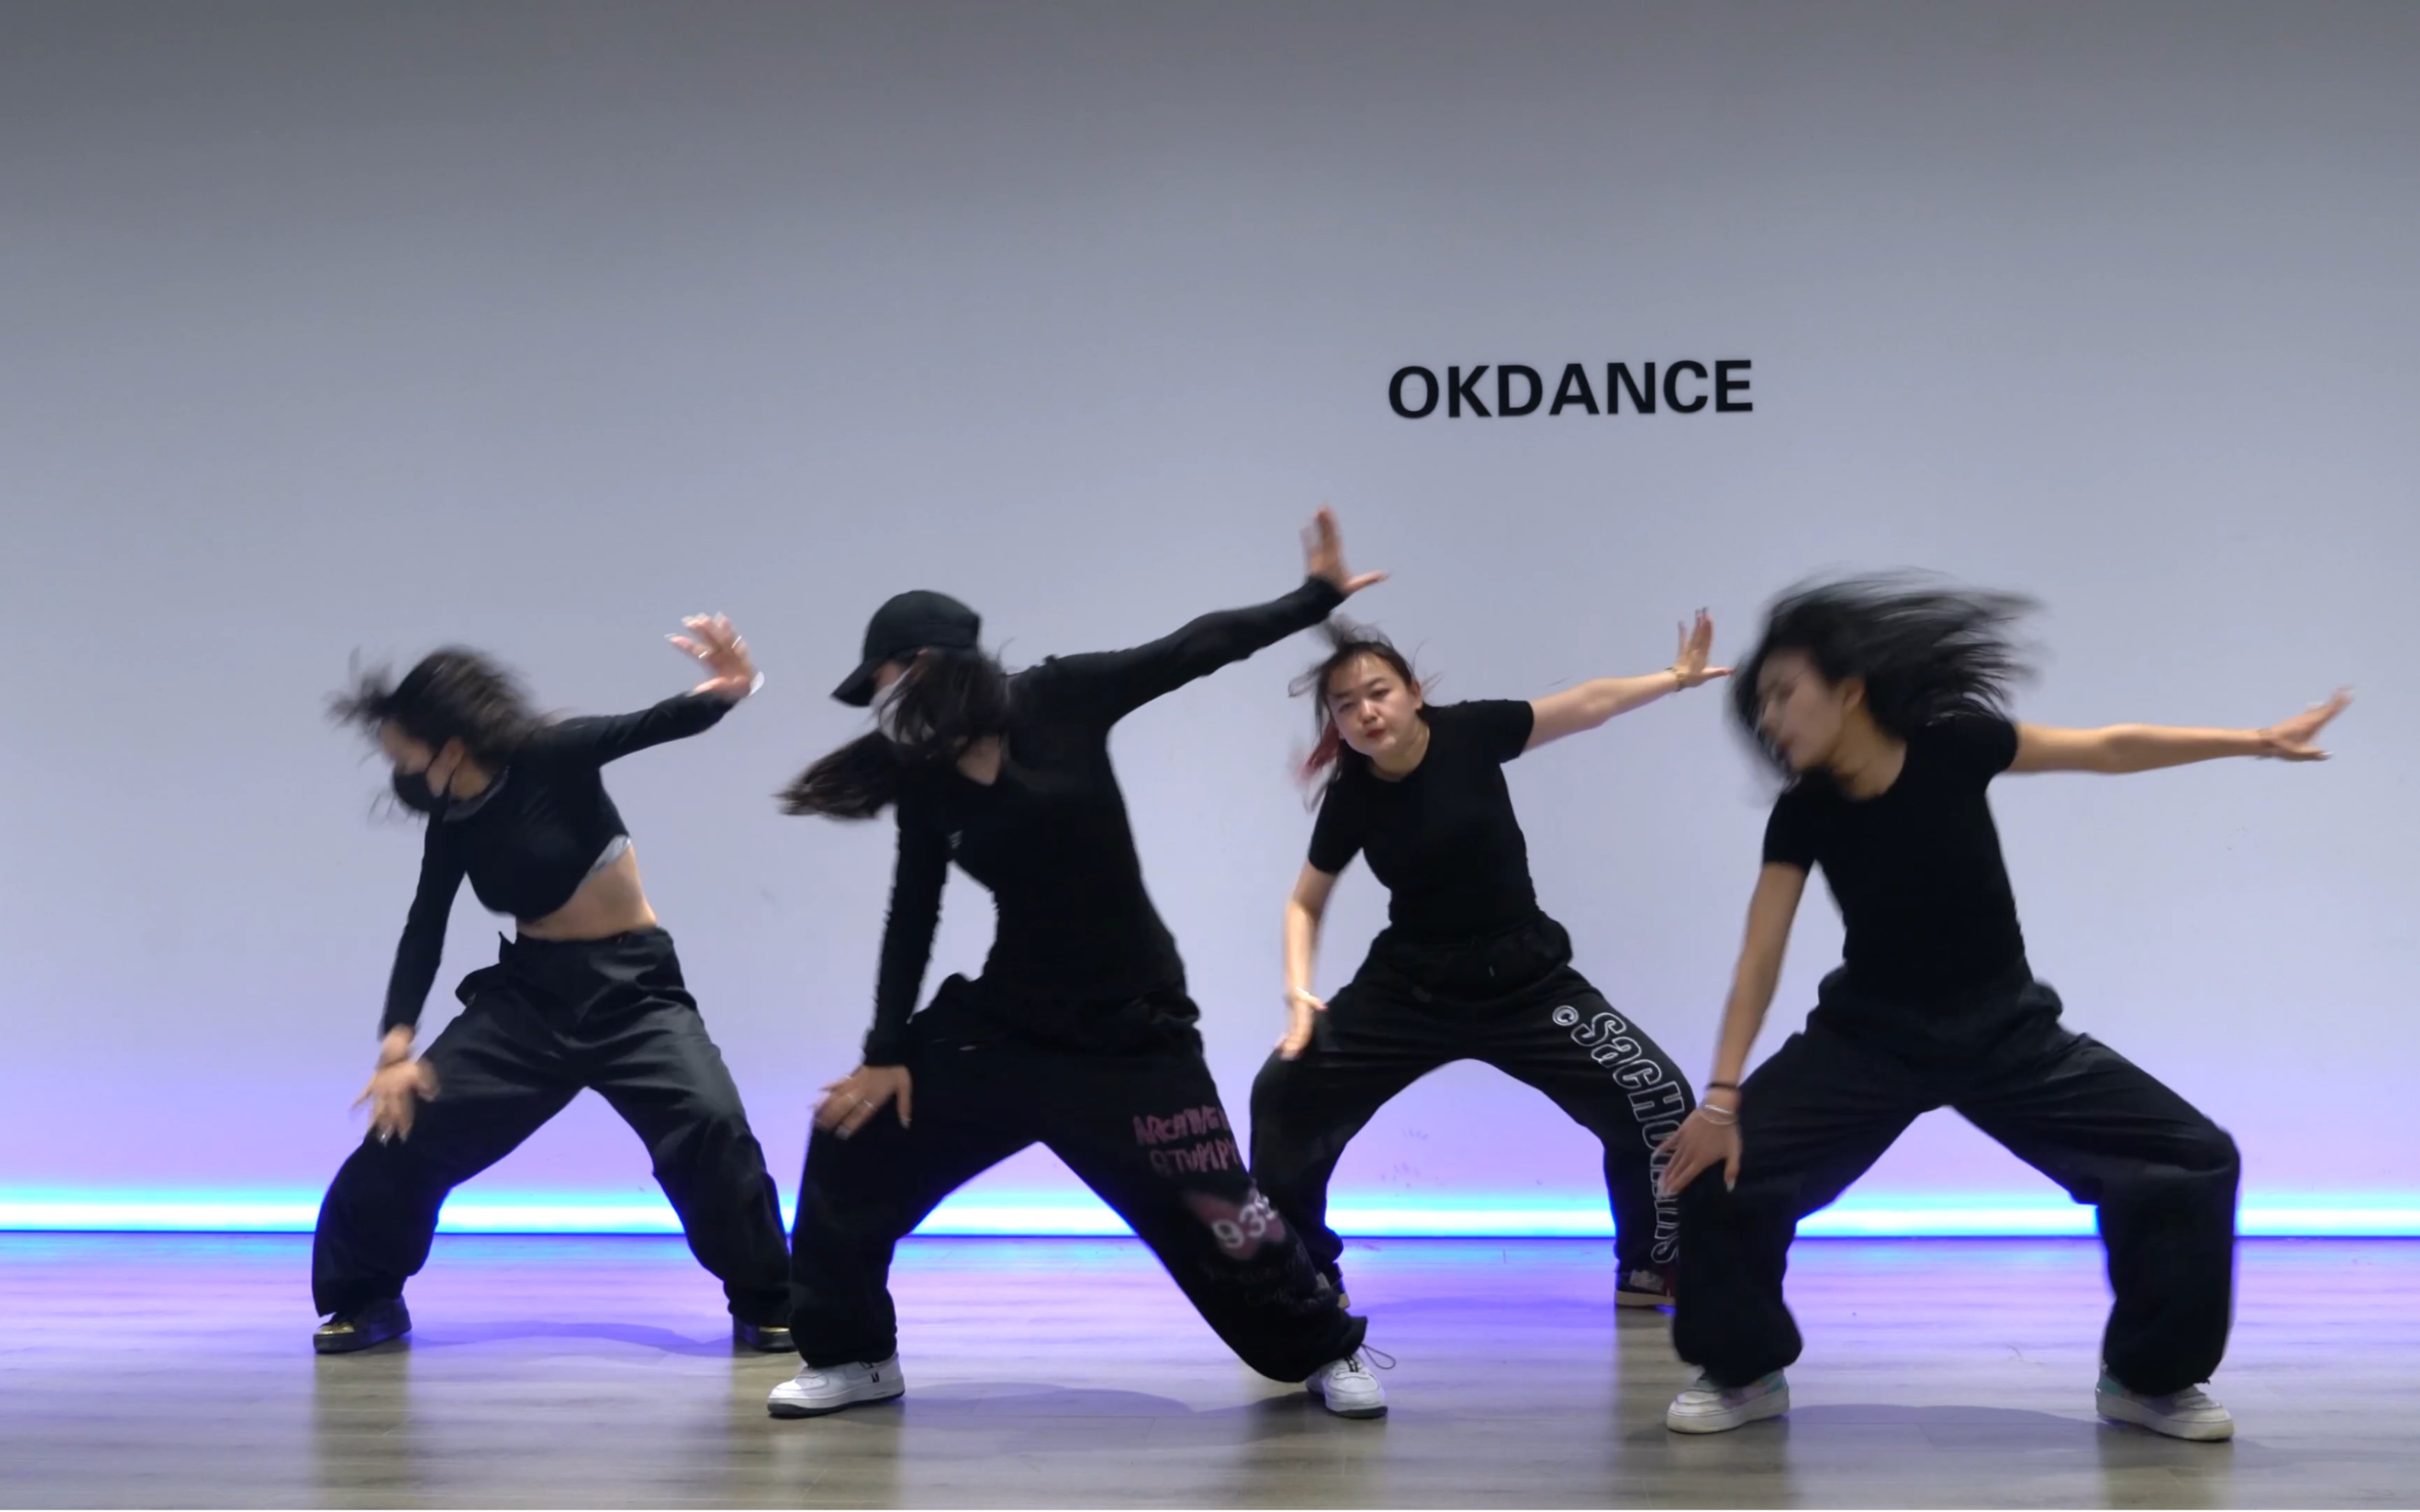 【ok dance】ok舞蹈翻跳 编舞 昆明街舞hiphop,昆明爵士舞jazz,昆明韩